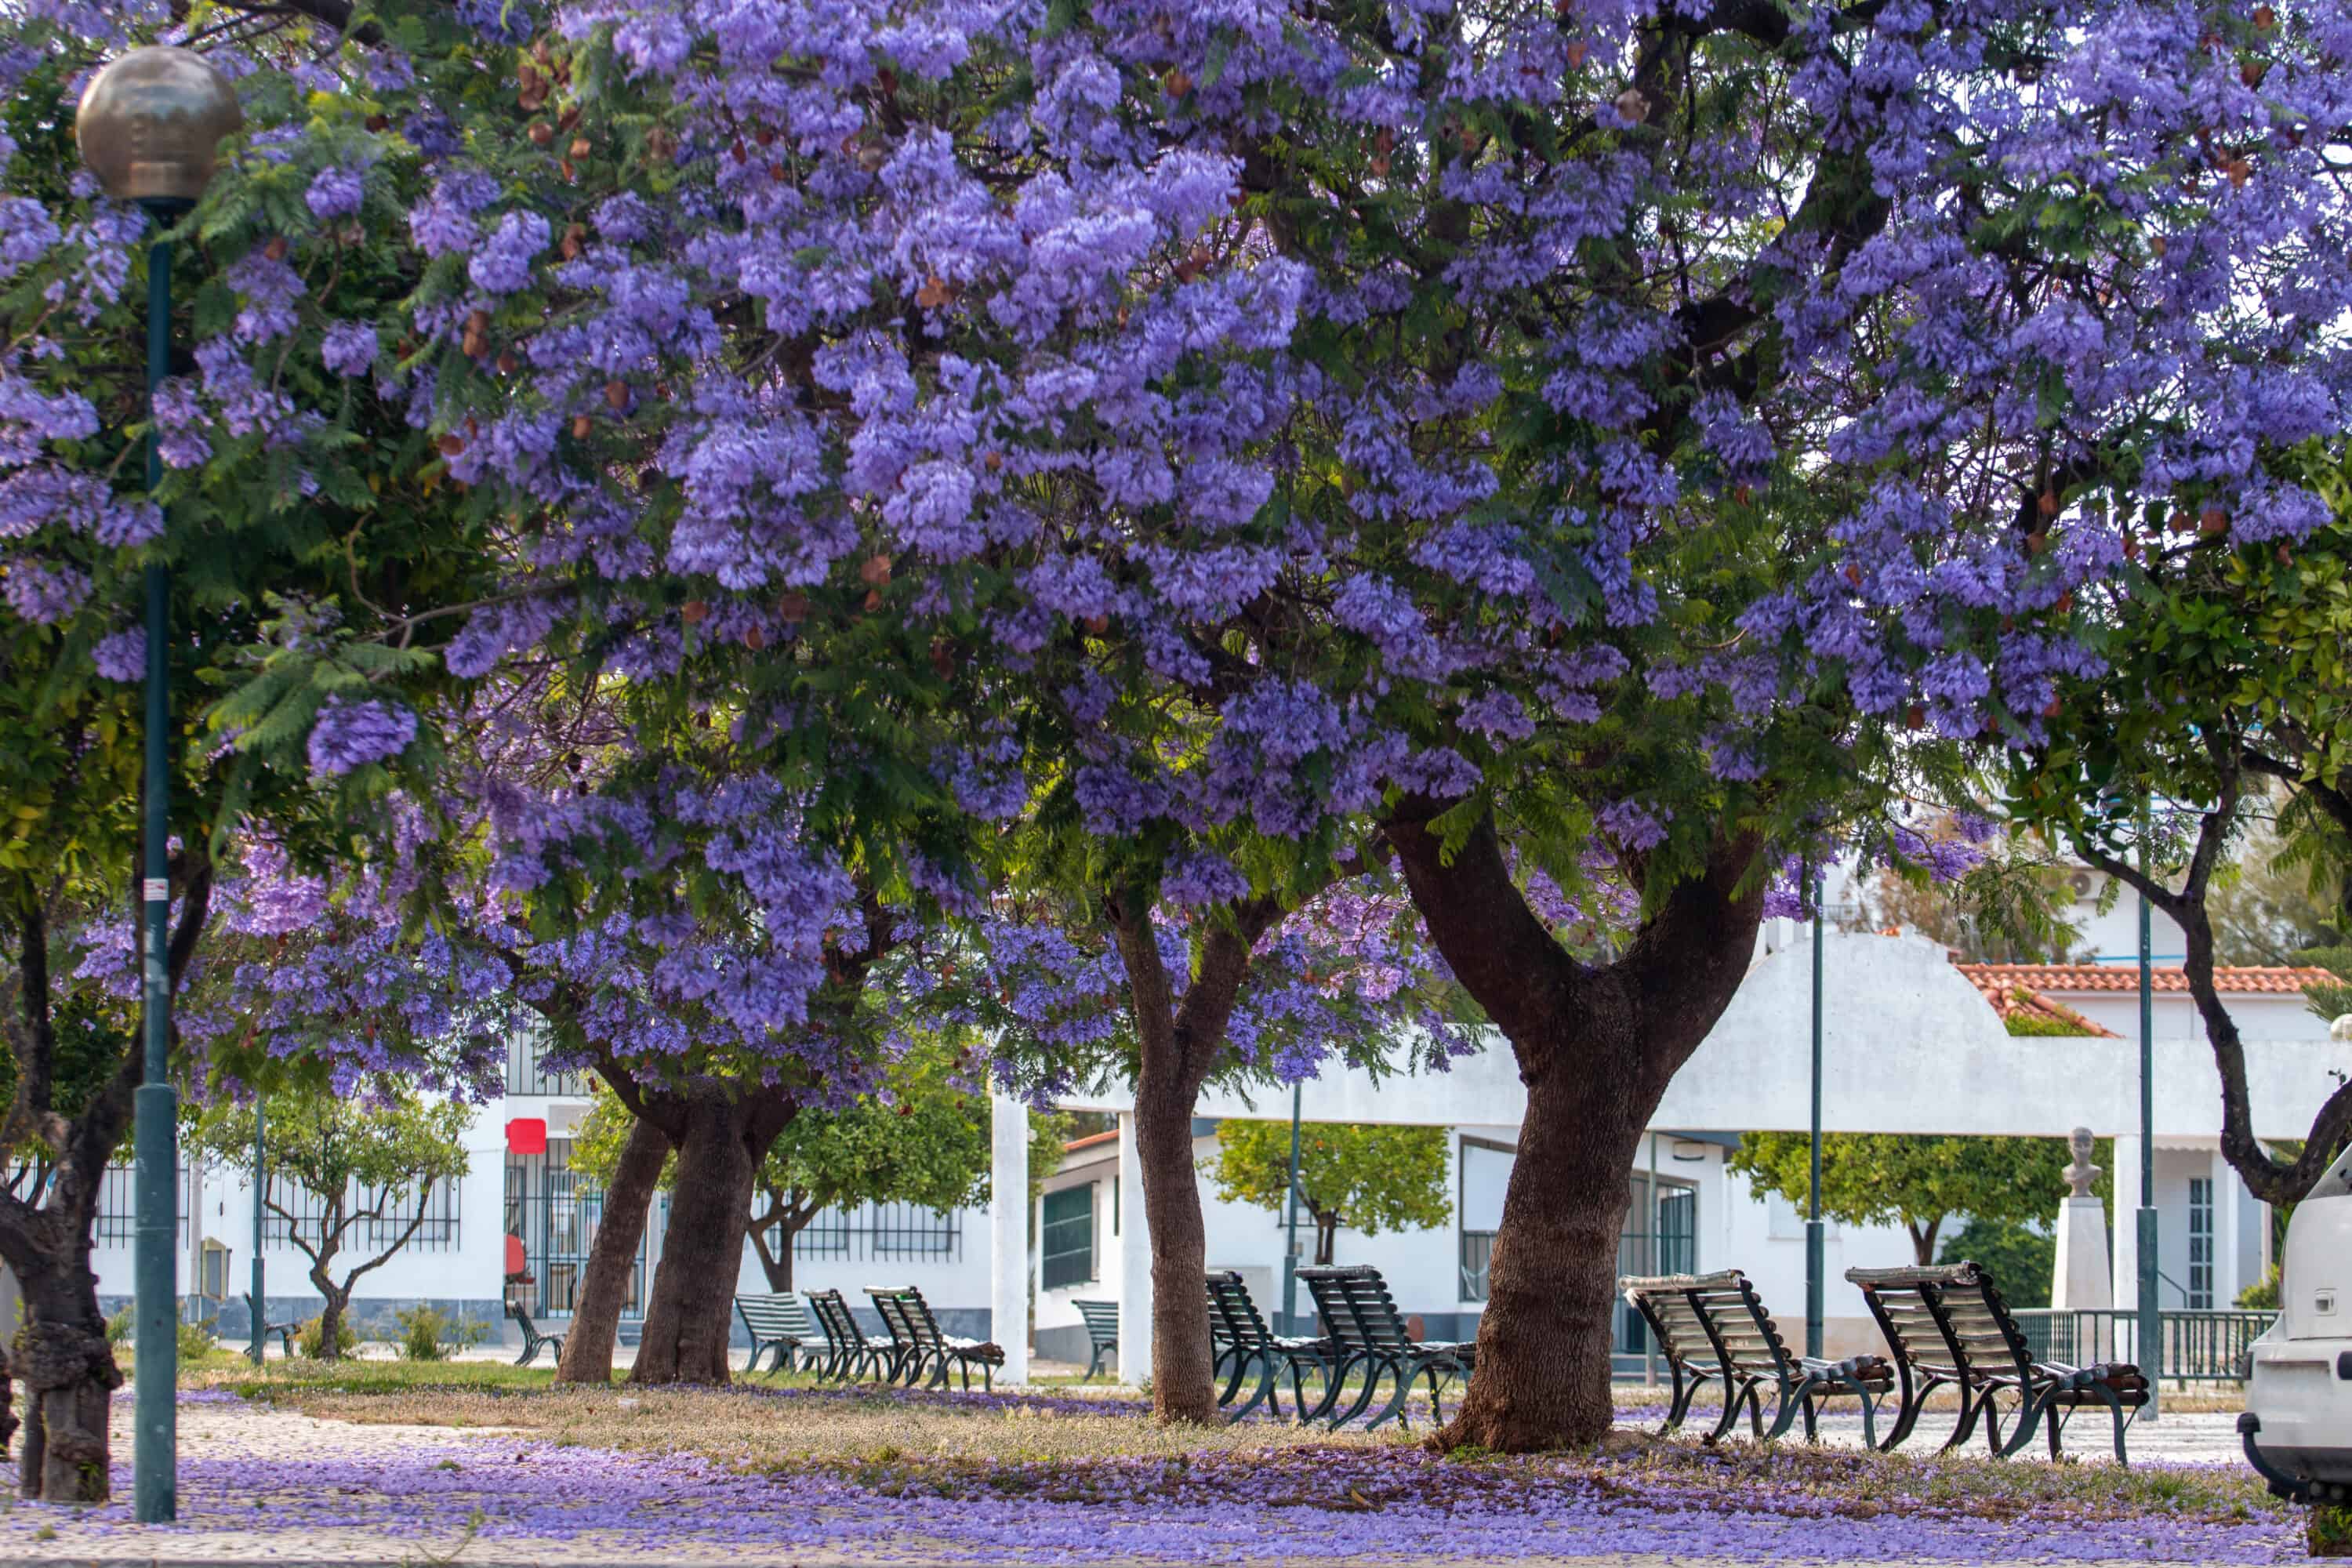 Jacarandas tress in Lisbon in full bloom with purple flowers.